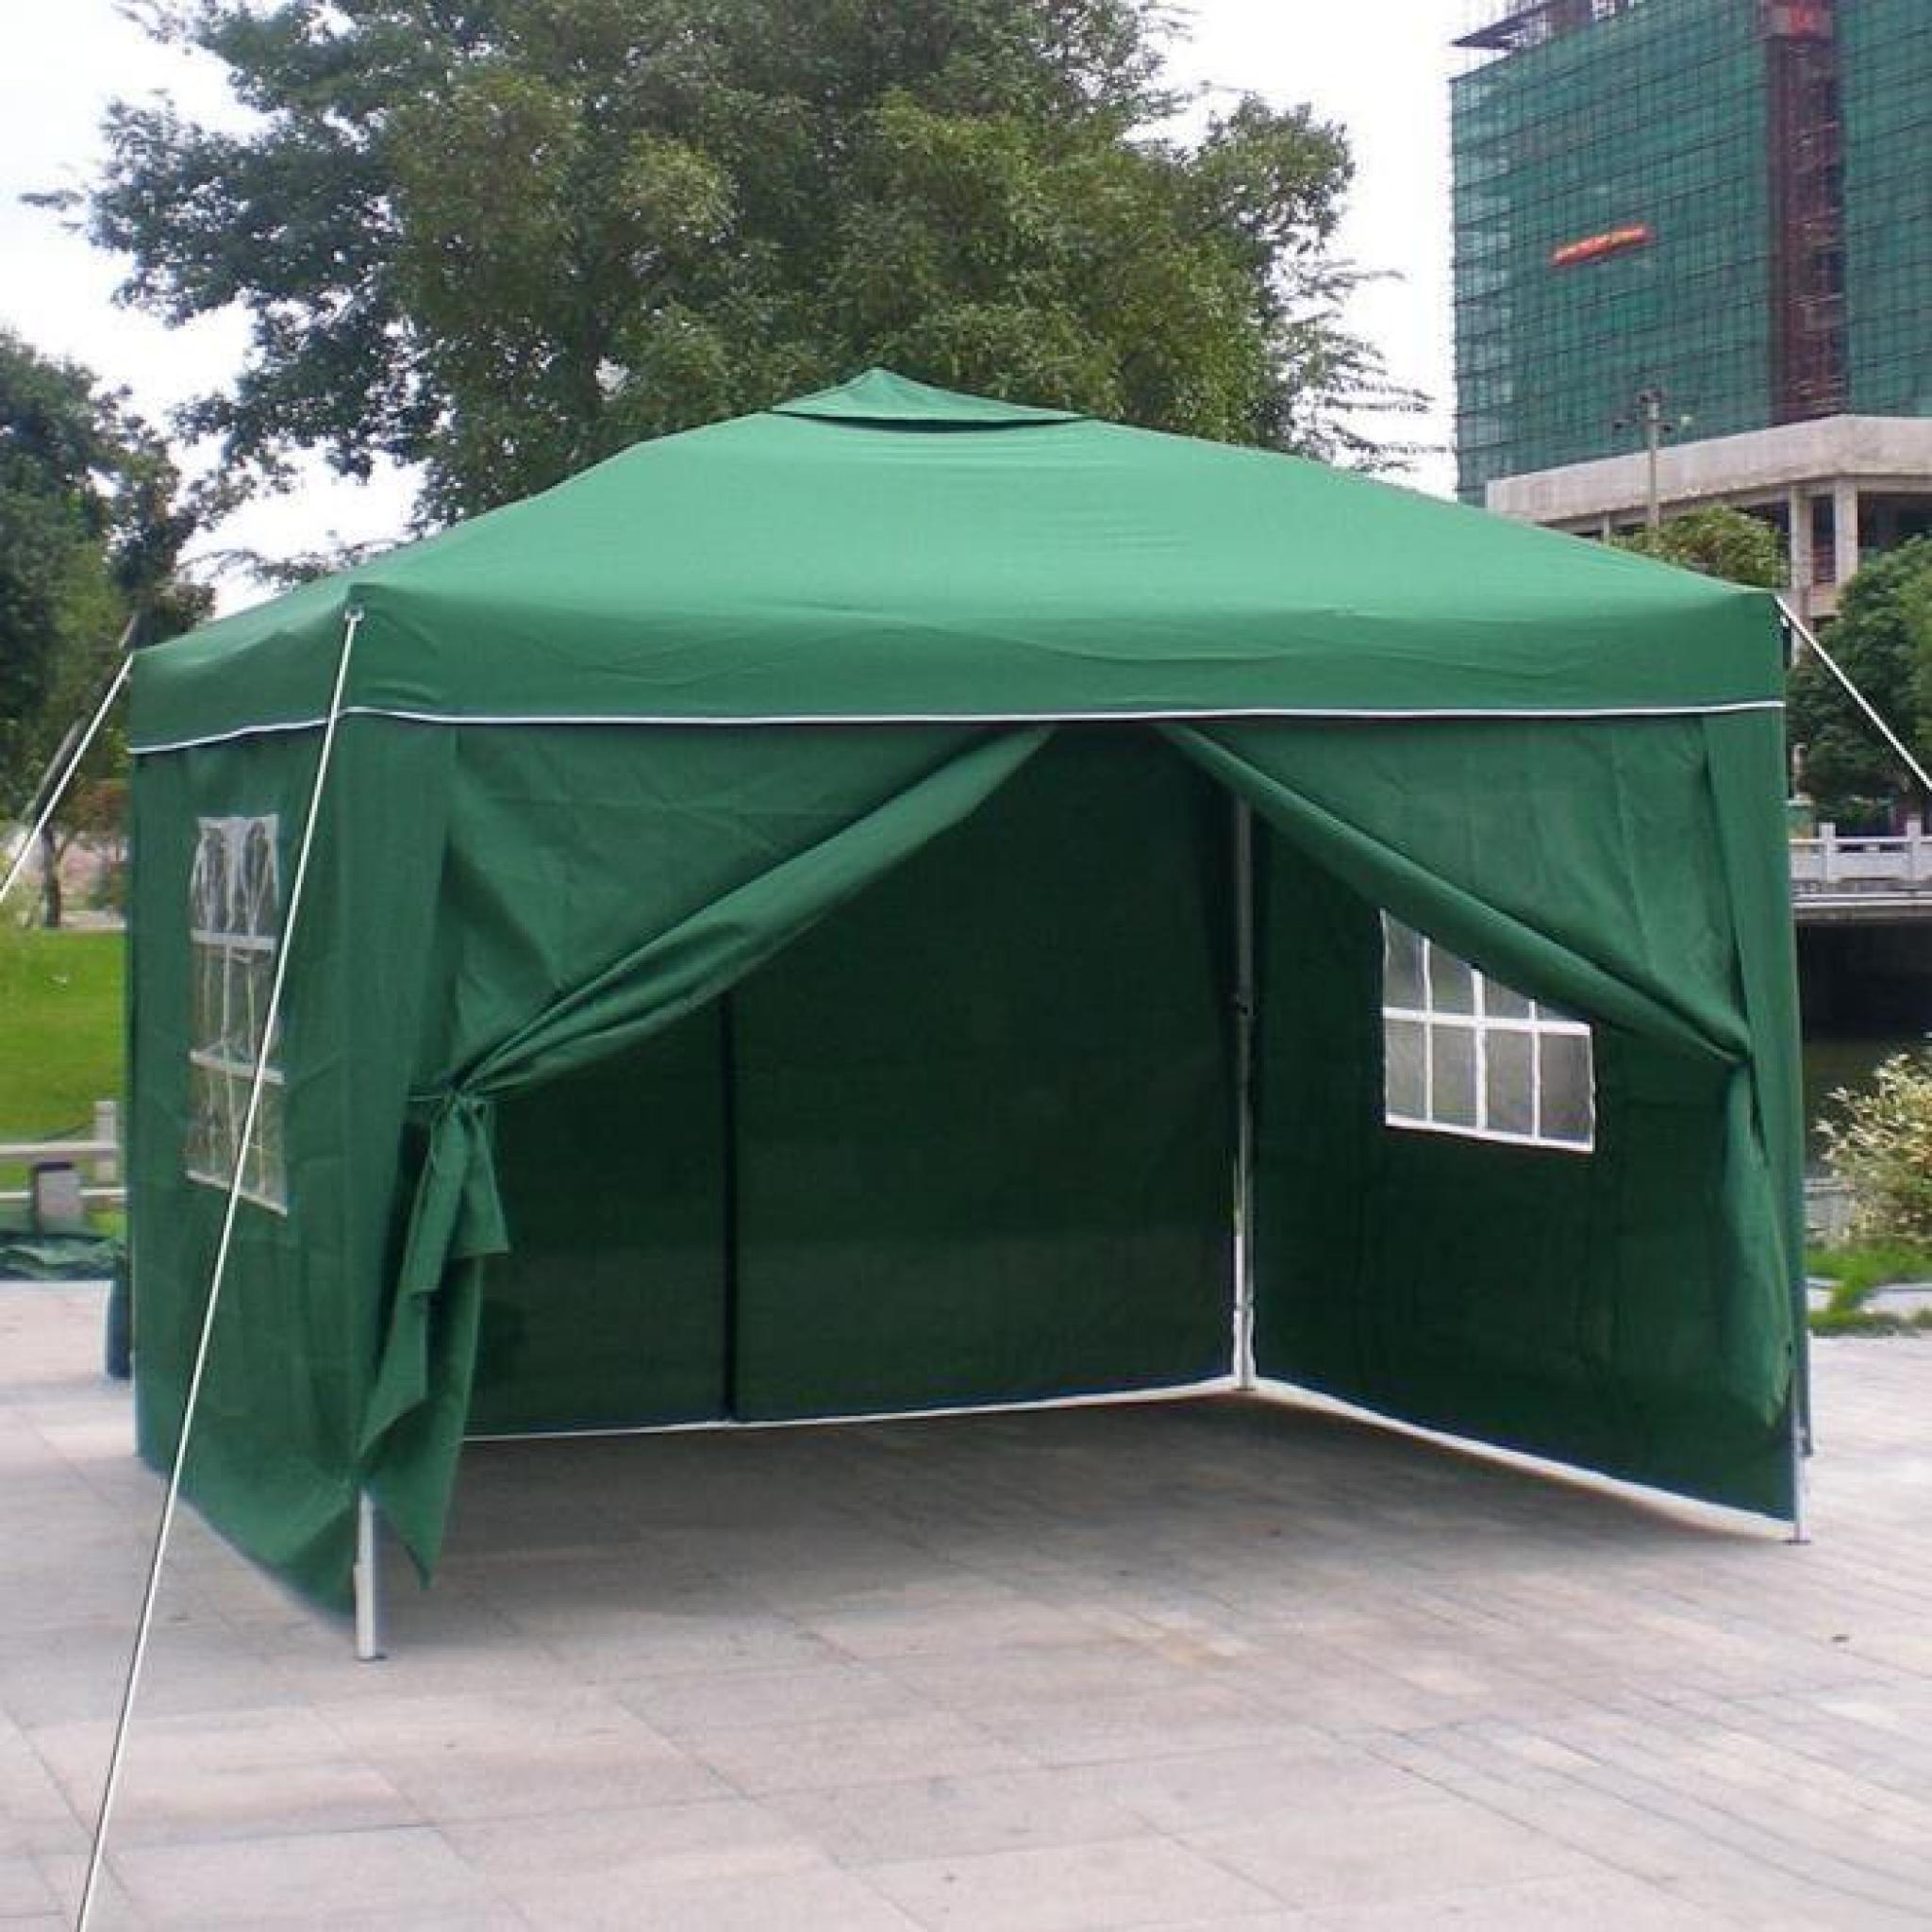 Homdox 3 x 3m tente tonnelle pliante Polyester auvent Camping tente en aluminium Tube-Support avec 4 panneaux latéraux pas cher